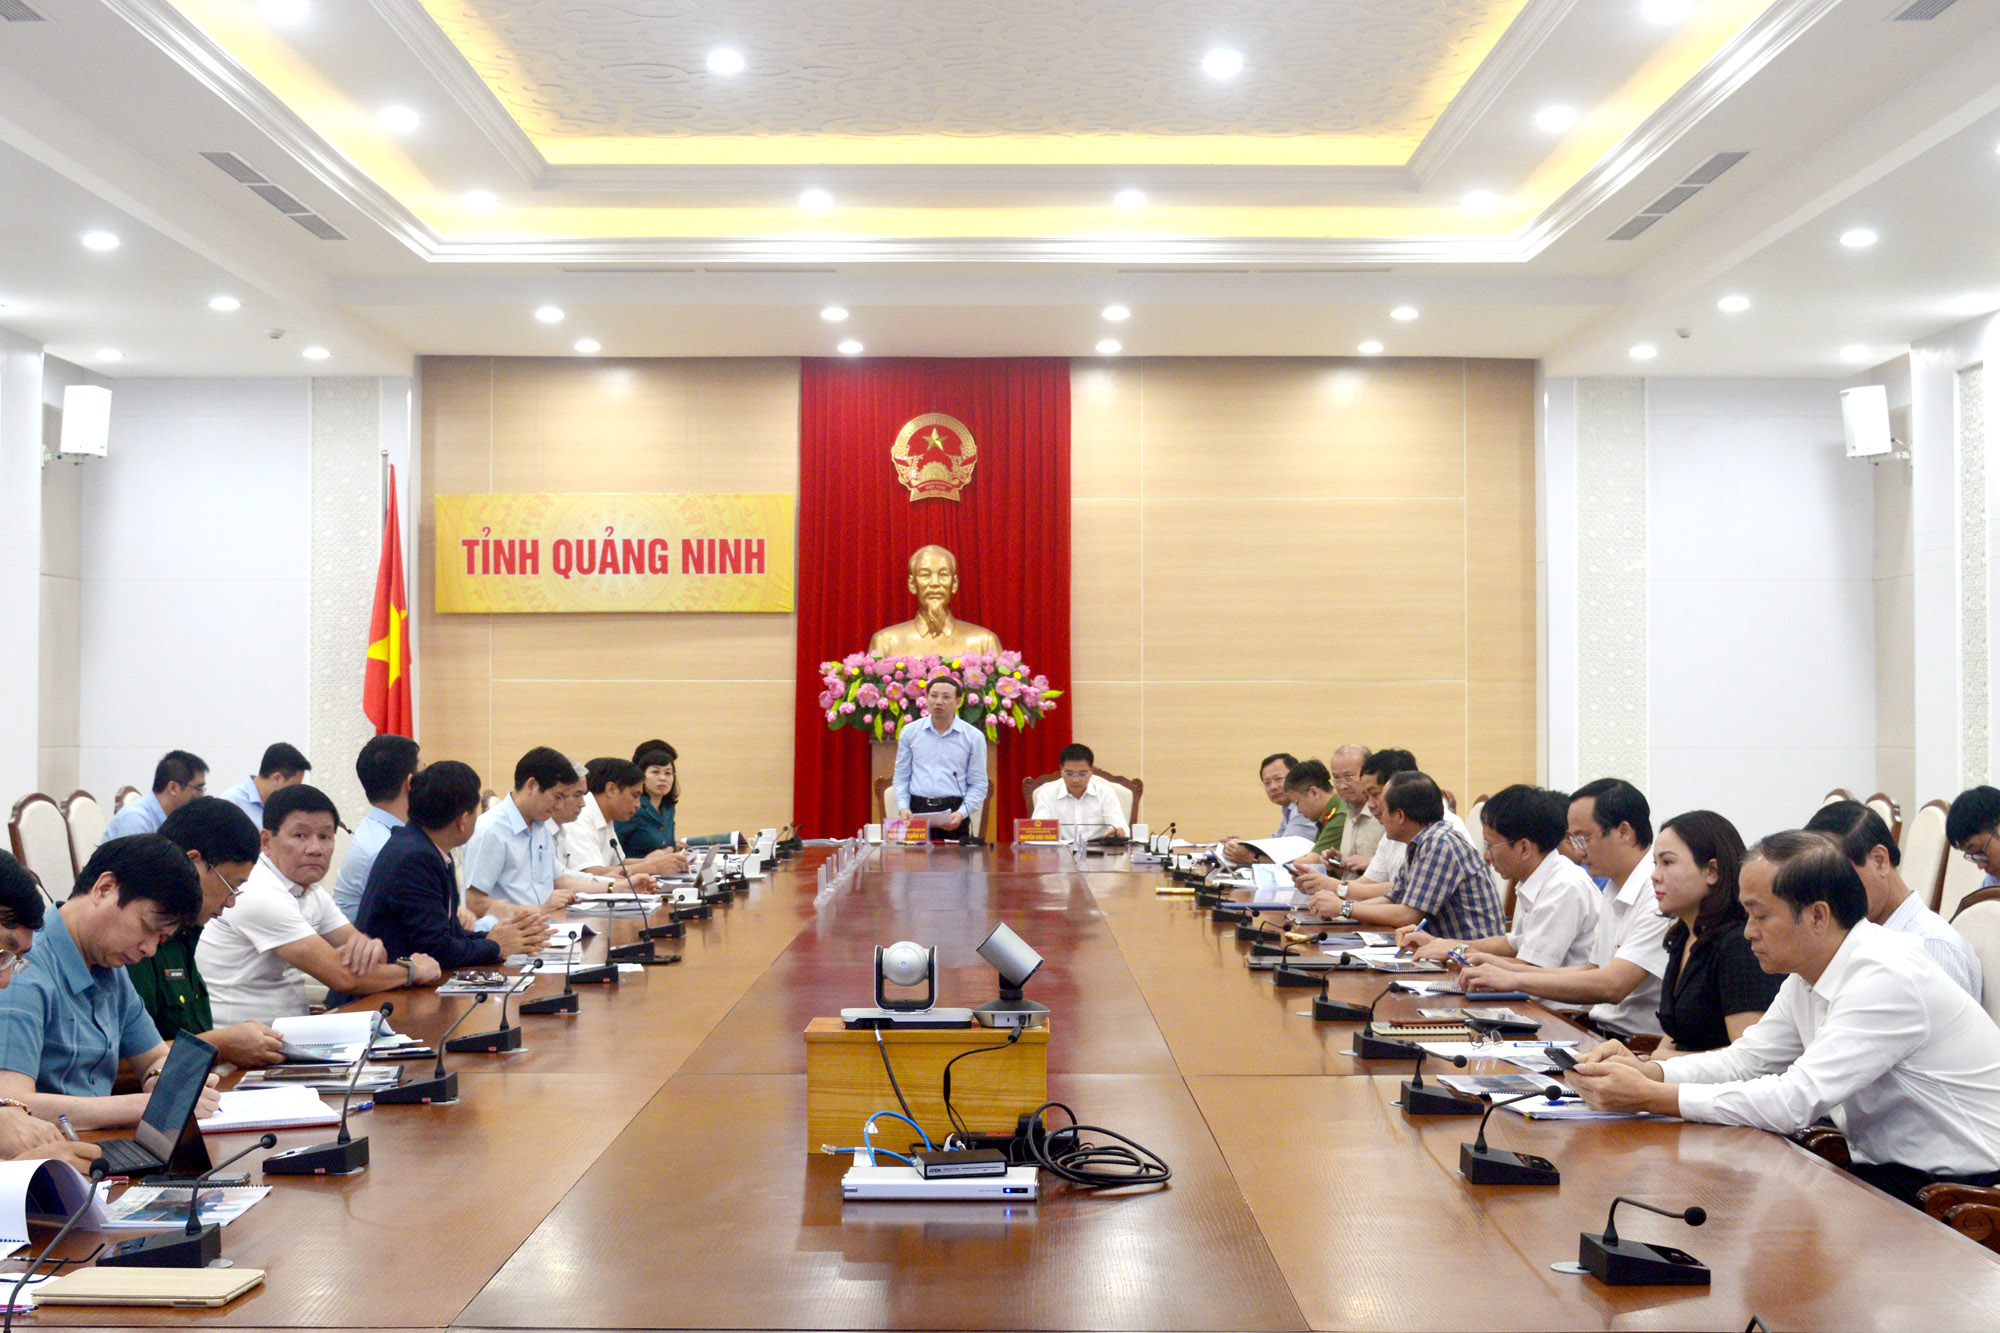 Đồng chí Nguyễn Xuân Ký, Bí thư Tỉnh ủy, Chủ tịch HĐND tỉnh, phát biểu chỉ đạo tại hội nghị.